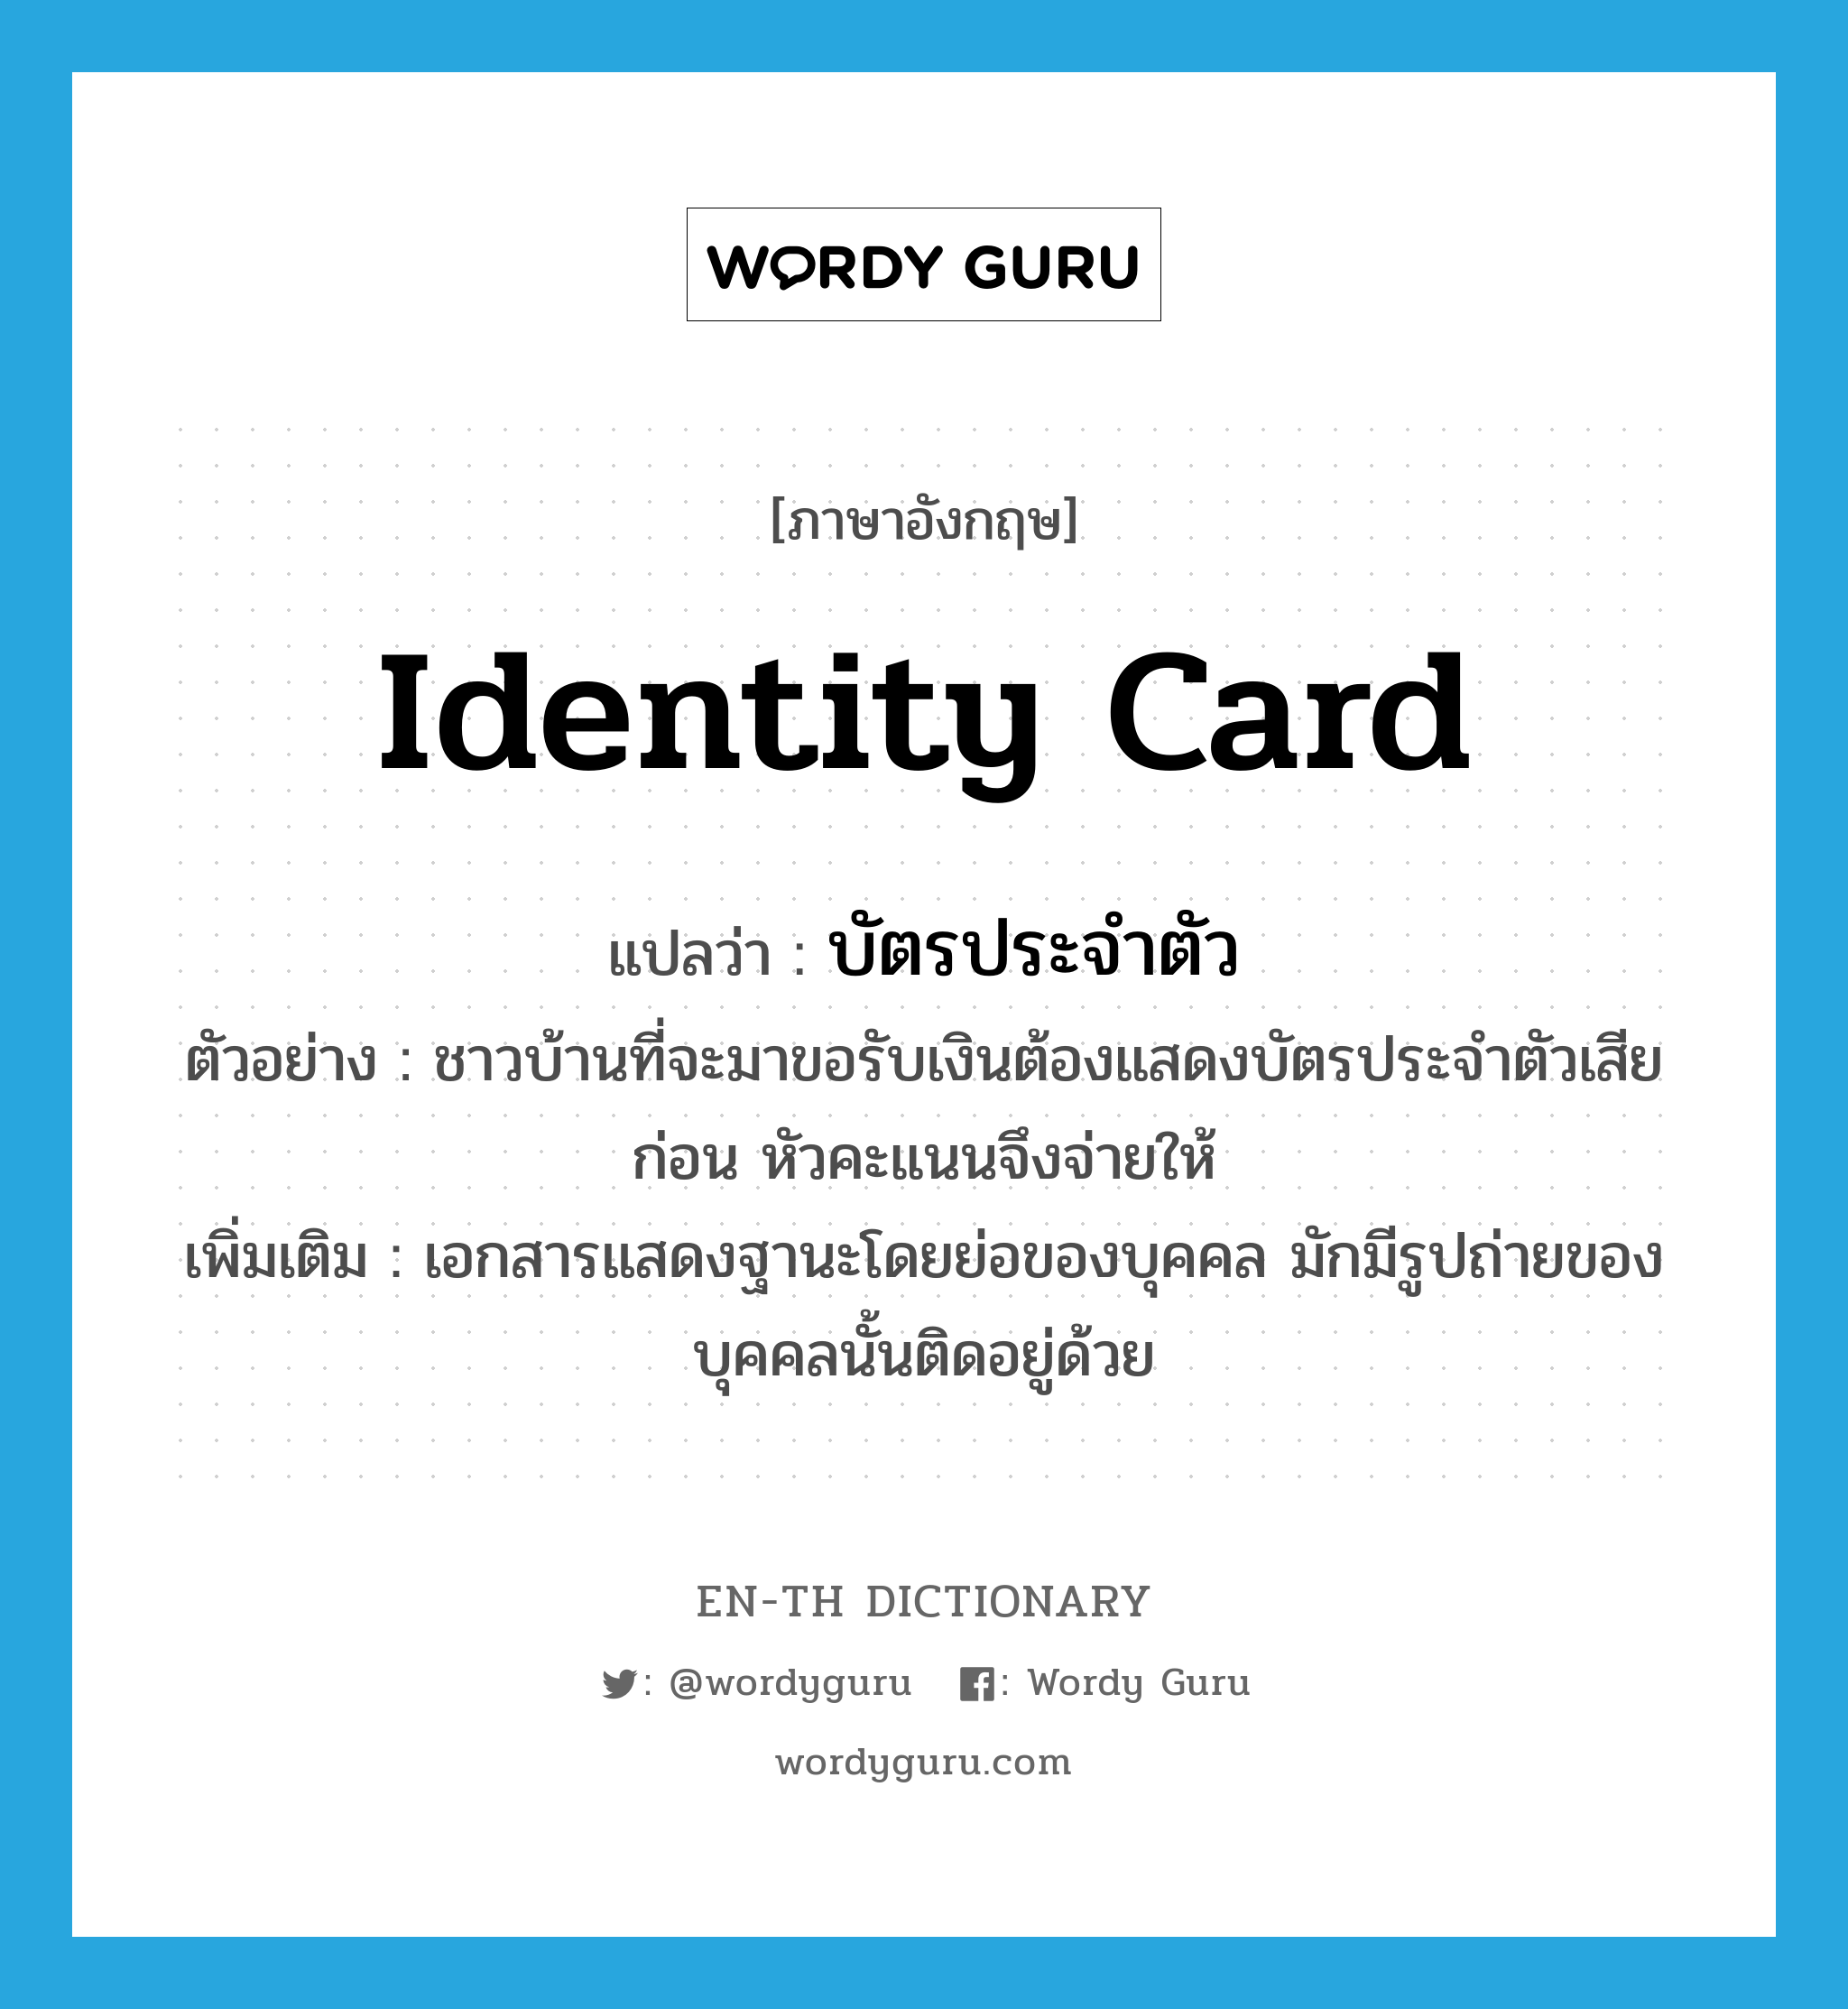 identity card แปลว่า?, คำศัพท์ภาษาอังกฤษ identity card แปลว่า บัตรประจำตัว ประเภท N ตัวอย่าง ชาวบ้านที่จะมาขอรับเงินต้องแสดงบัตรประจำตัวเสียก่อน หัวคะแนนจึงจ่ายให้ เพิ่มเติม เอกสารแสดงฐานะโดยย่อของบุคคล มักมีรูปถ่ายของบุคคลนั้นติดอยู่ด้วย หมวด N